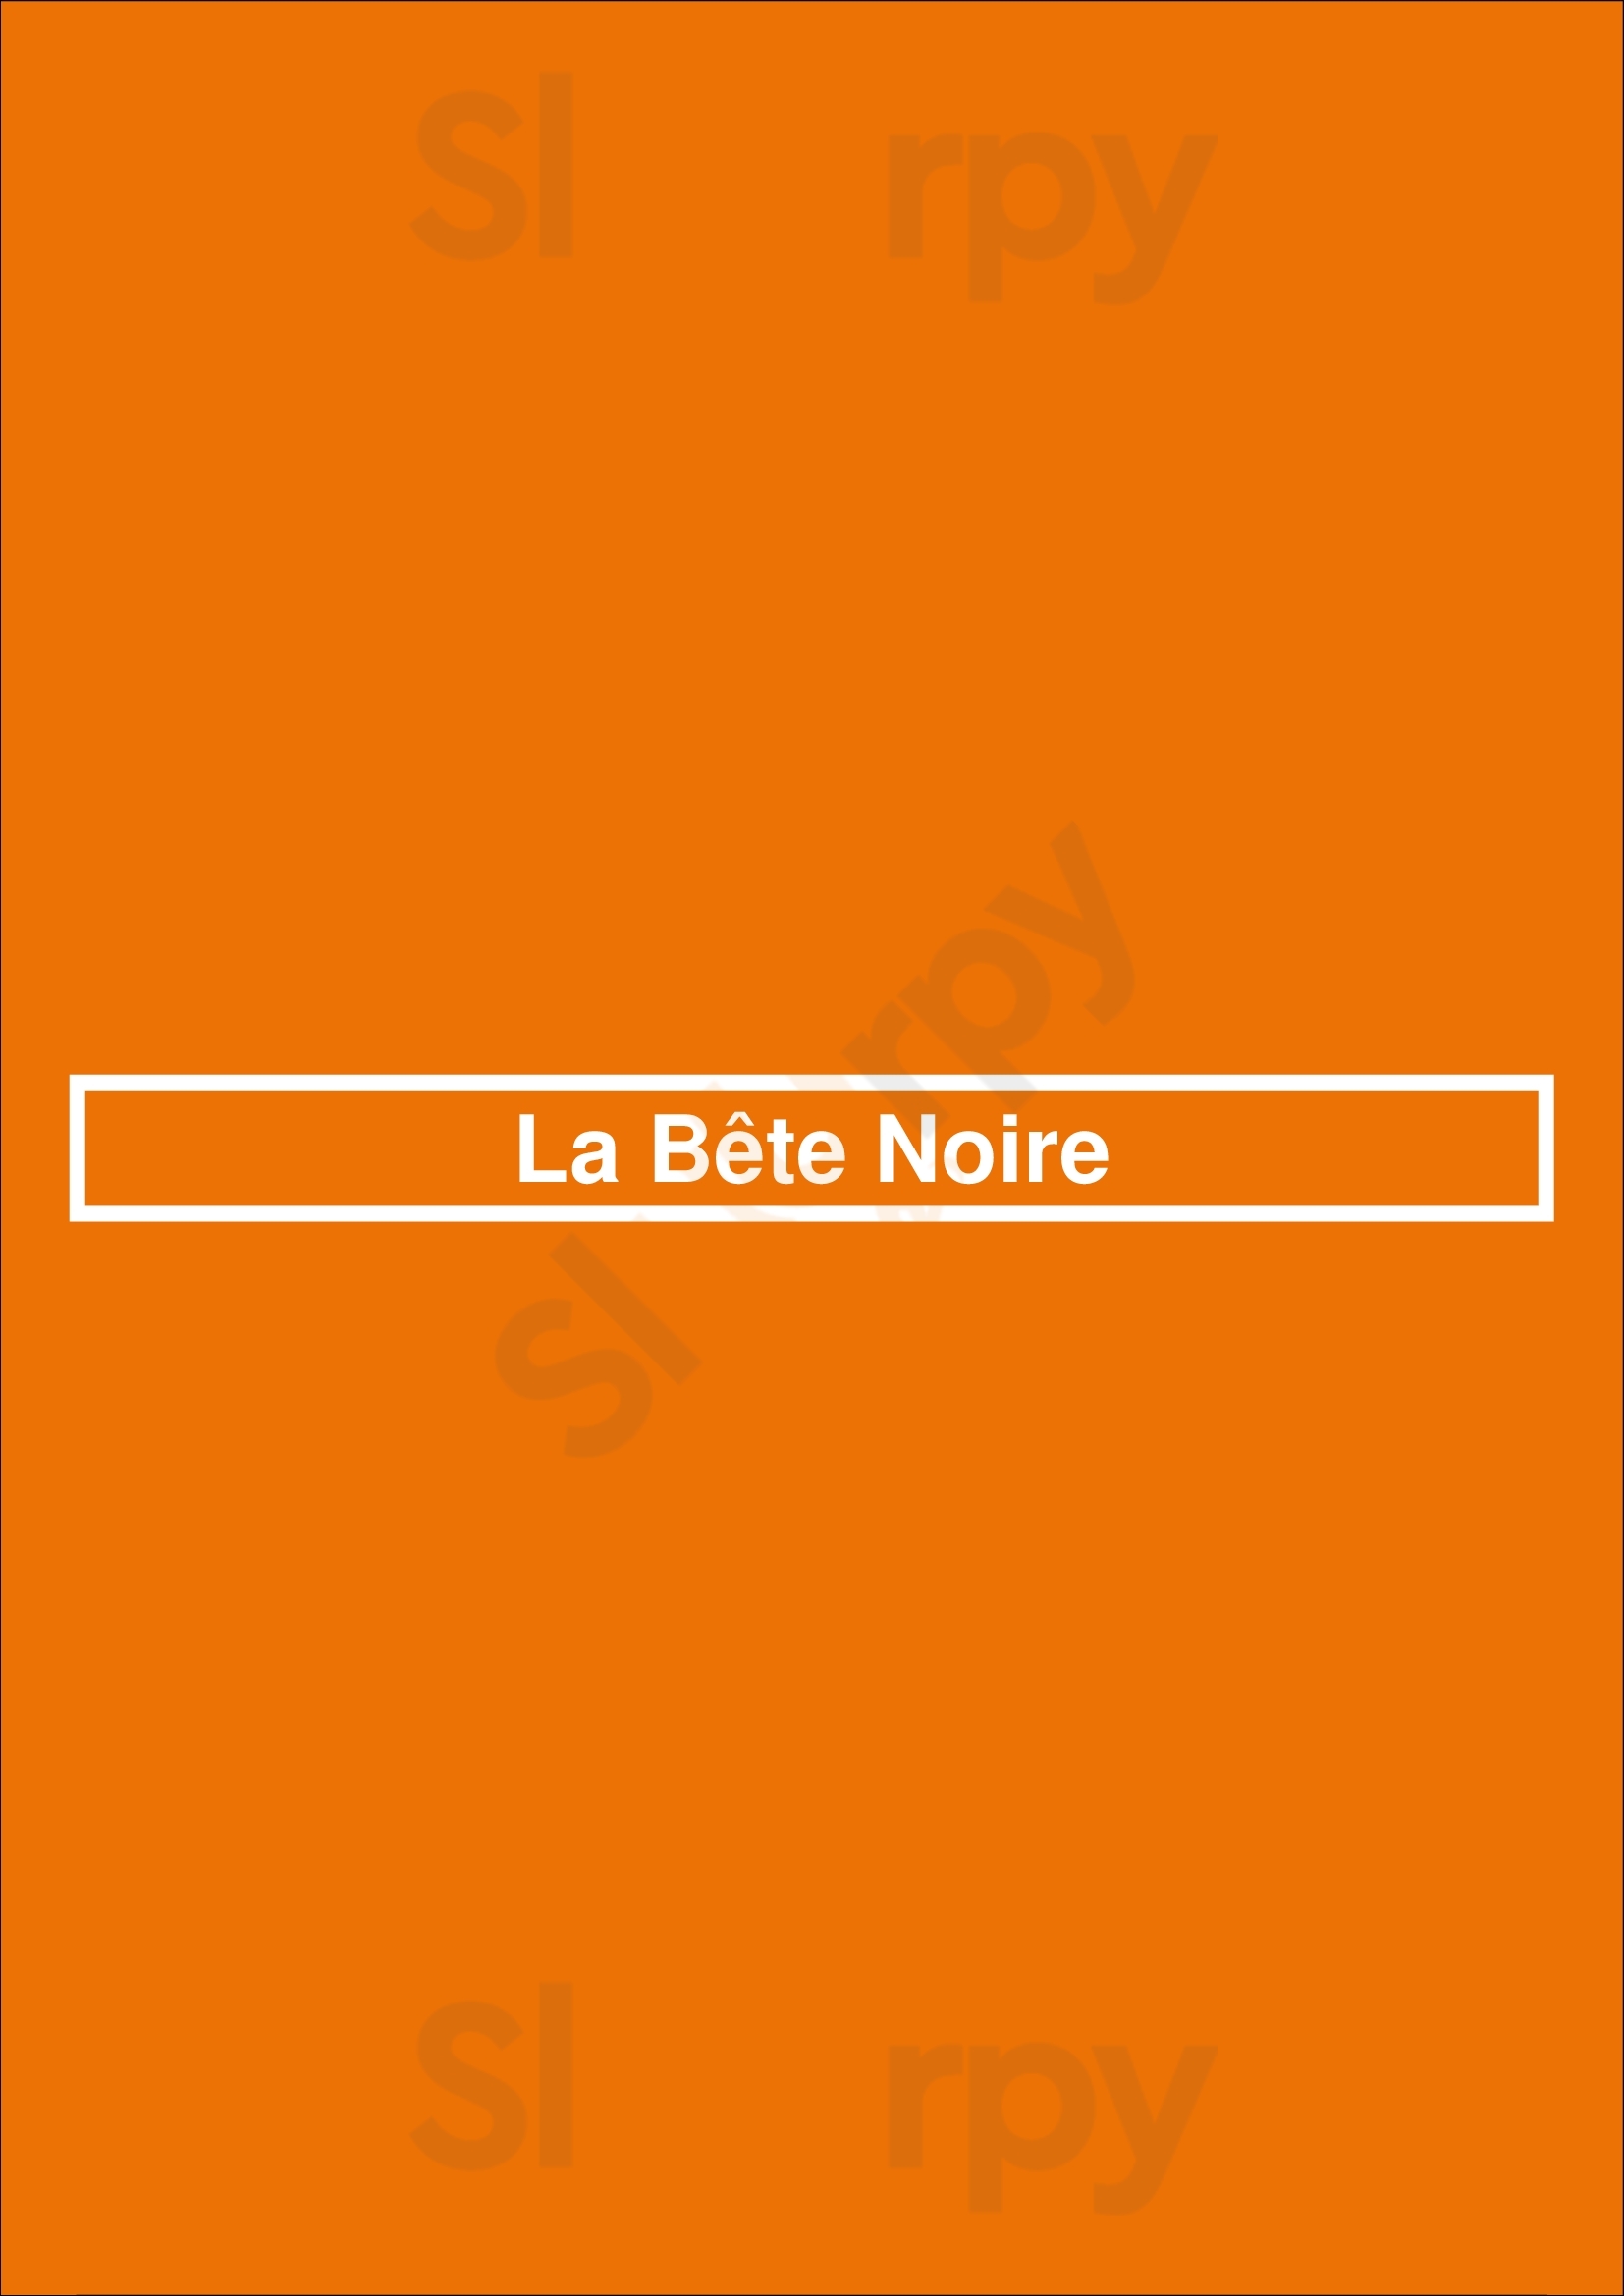 La Bête Noire Paris Menu - 1